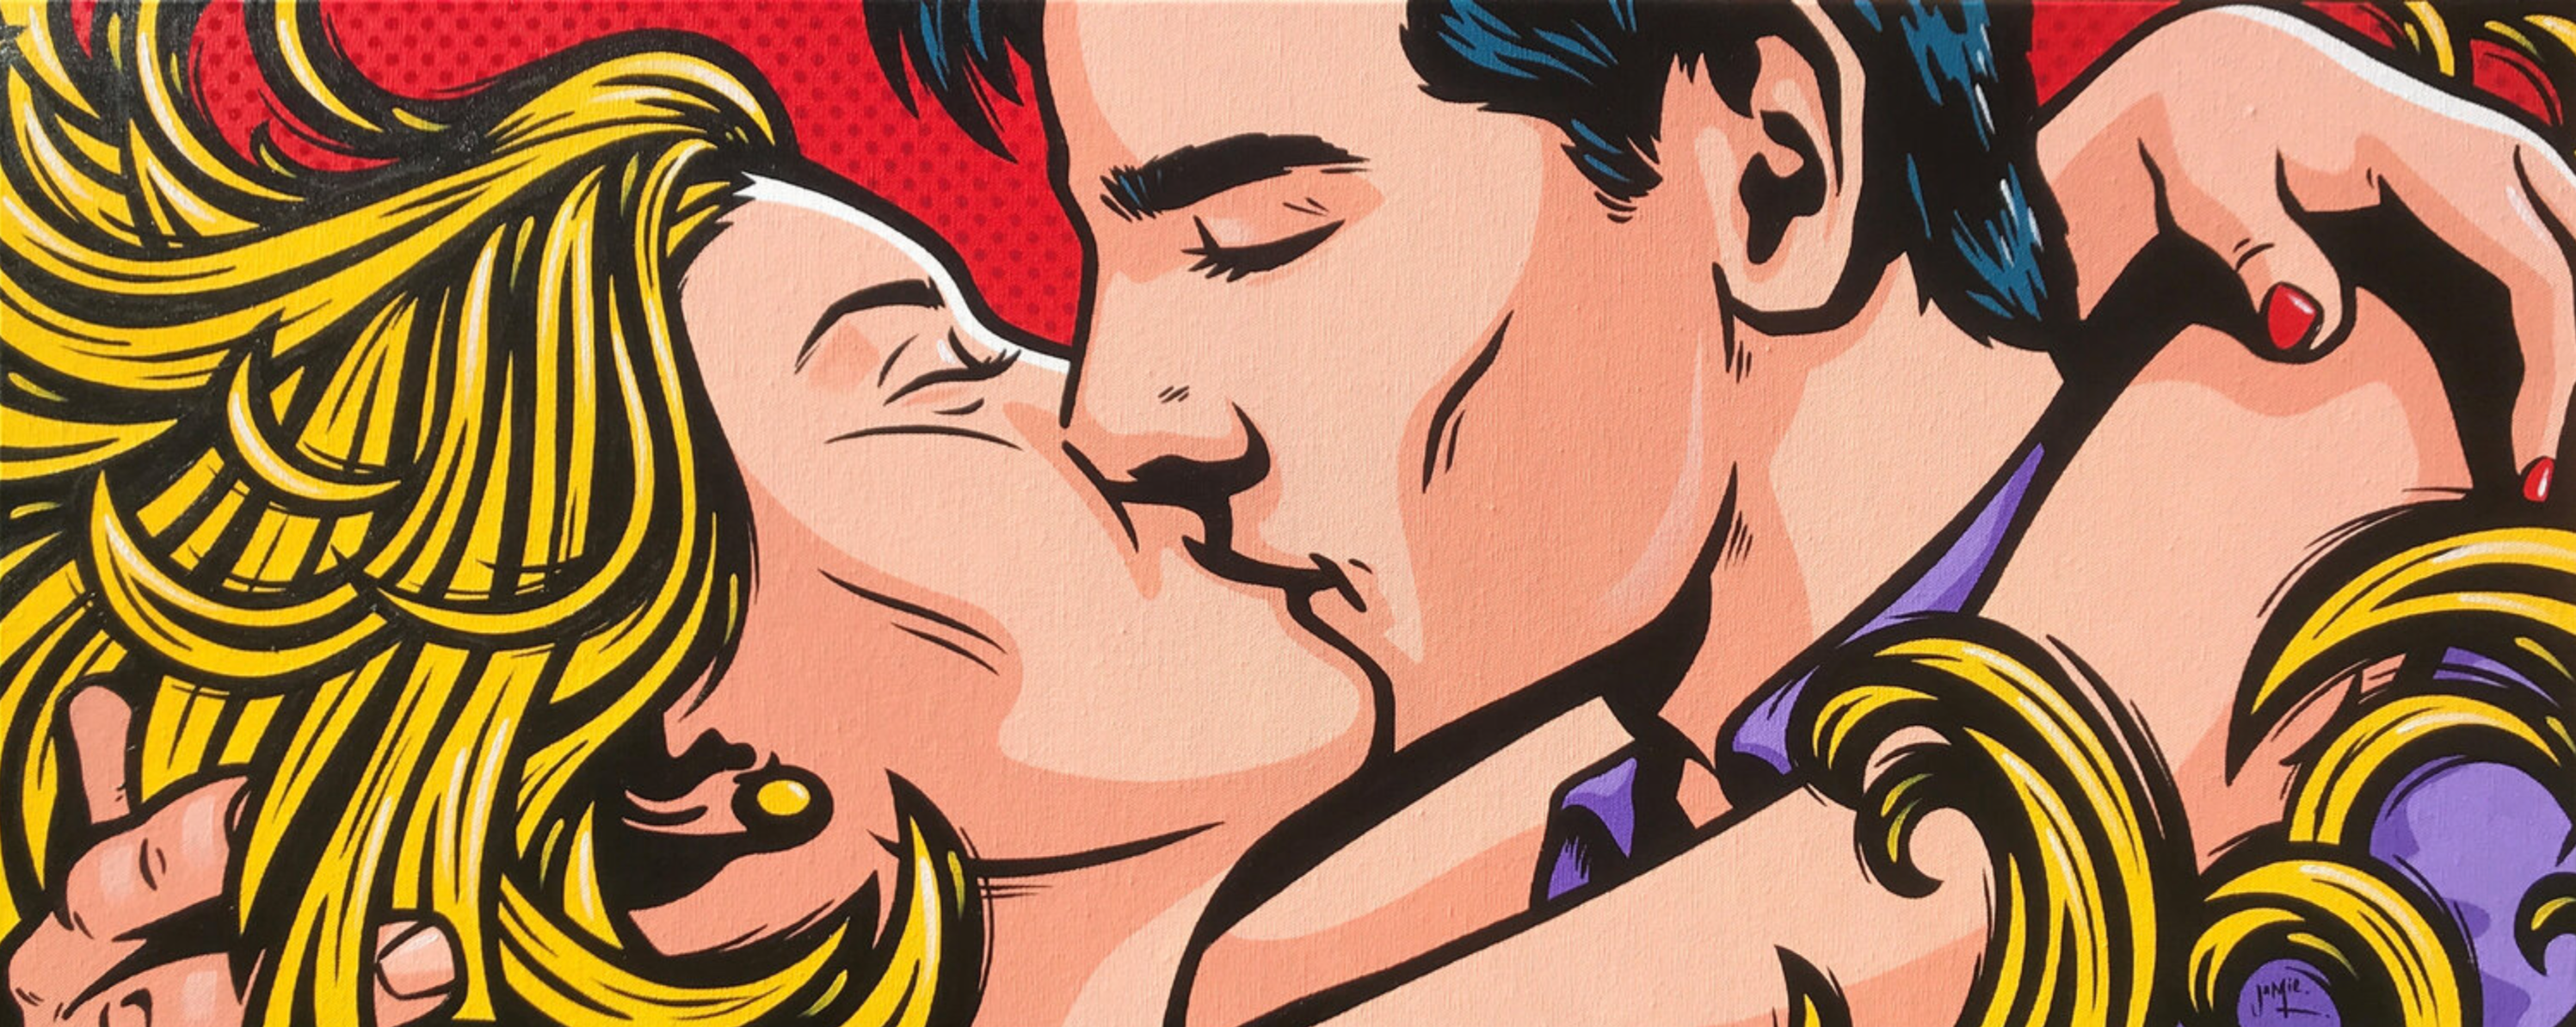 杰米-李的 "Jung Love "漫画风格的流行艺术画作，原创设计了一对年轻夫妇相互拥抱，激情接吻的场景。女人的金发像激情的火焰一样缠绕着她。